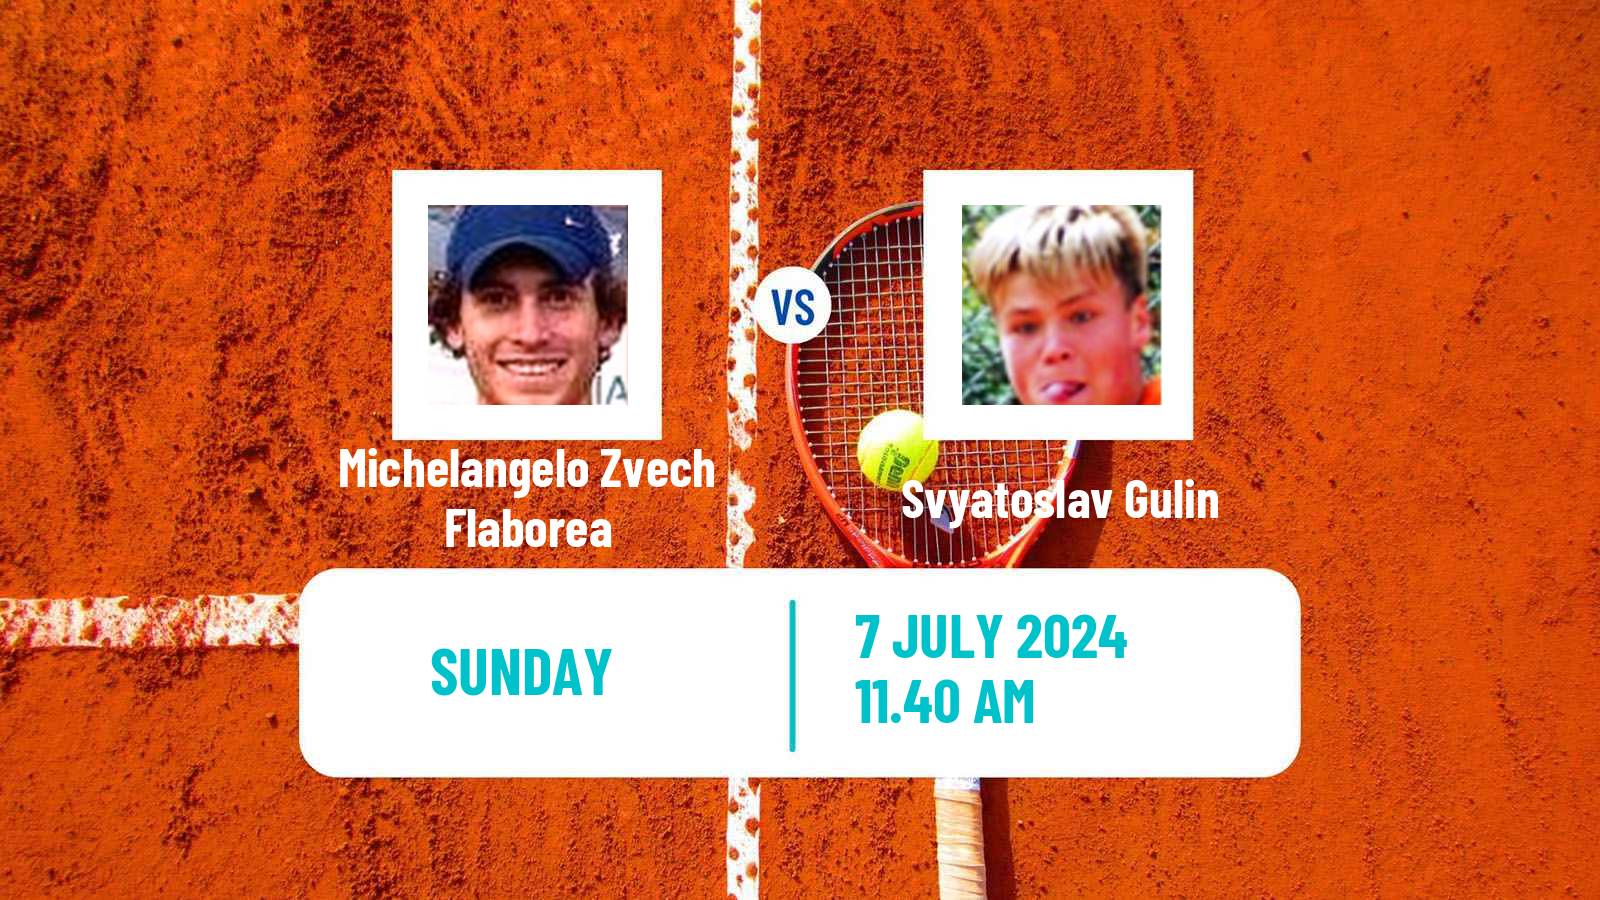 Tennis Trieste Challenger Men Michelangelo Zvech Flaborea - Svyatoslav Gulin